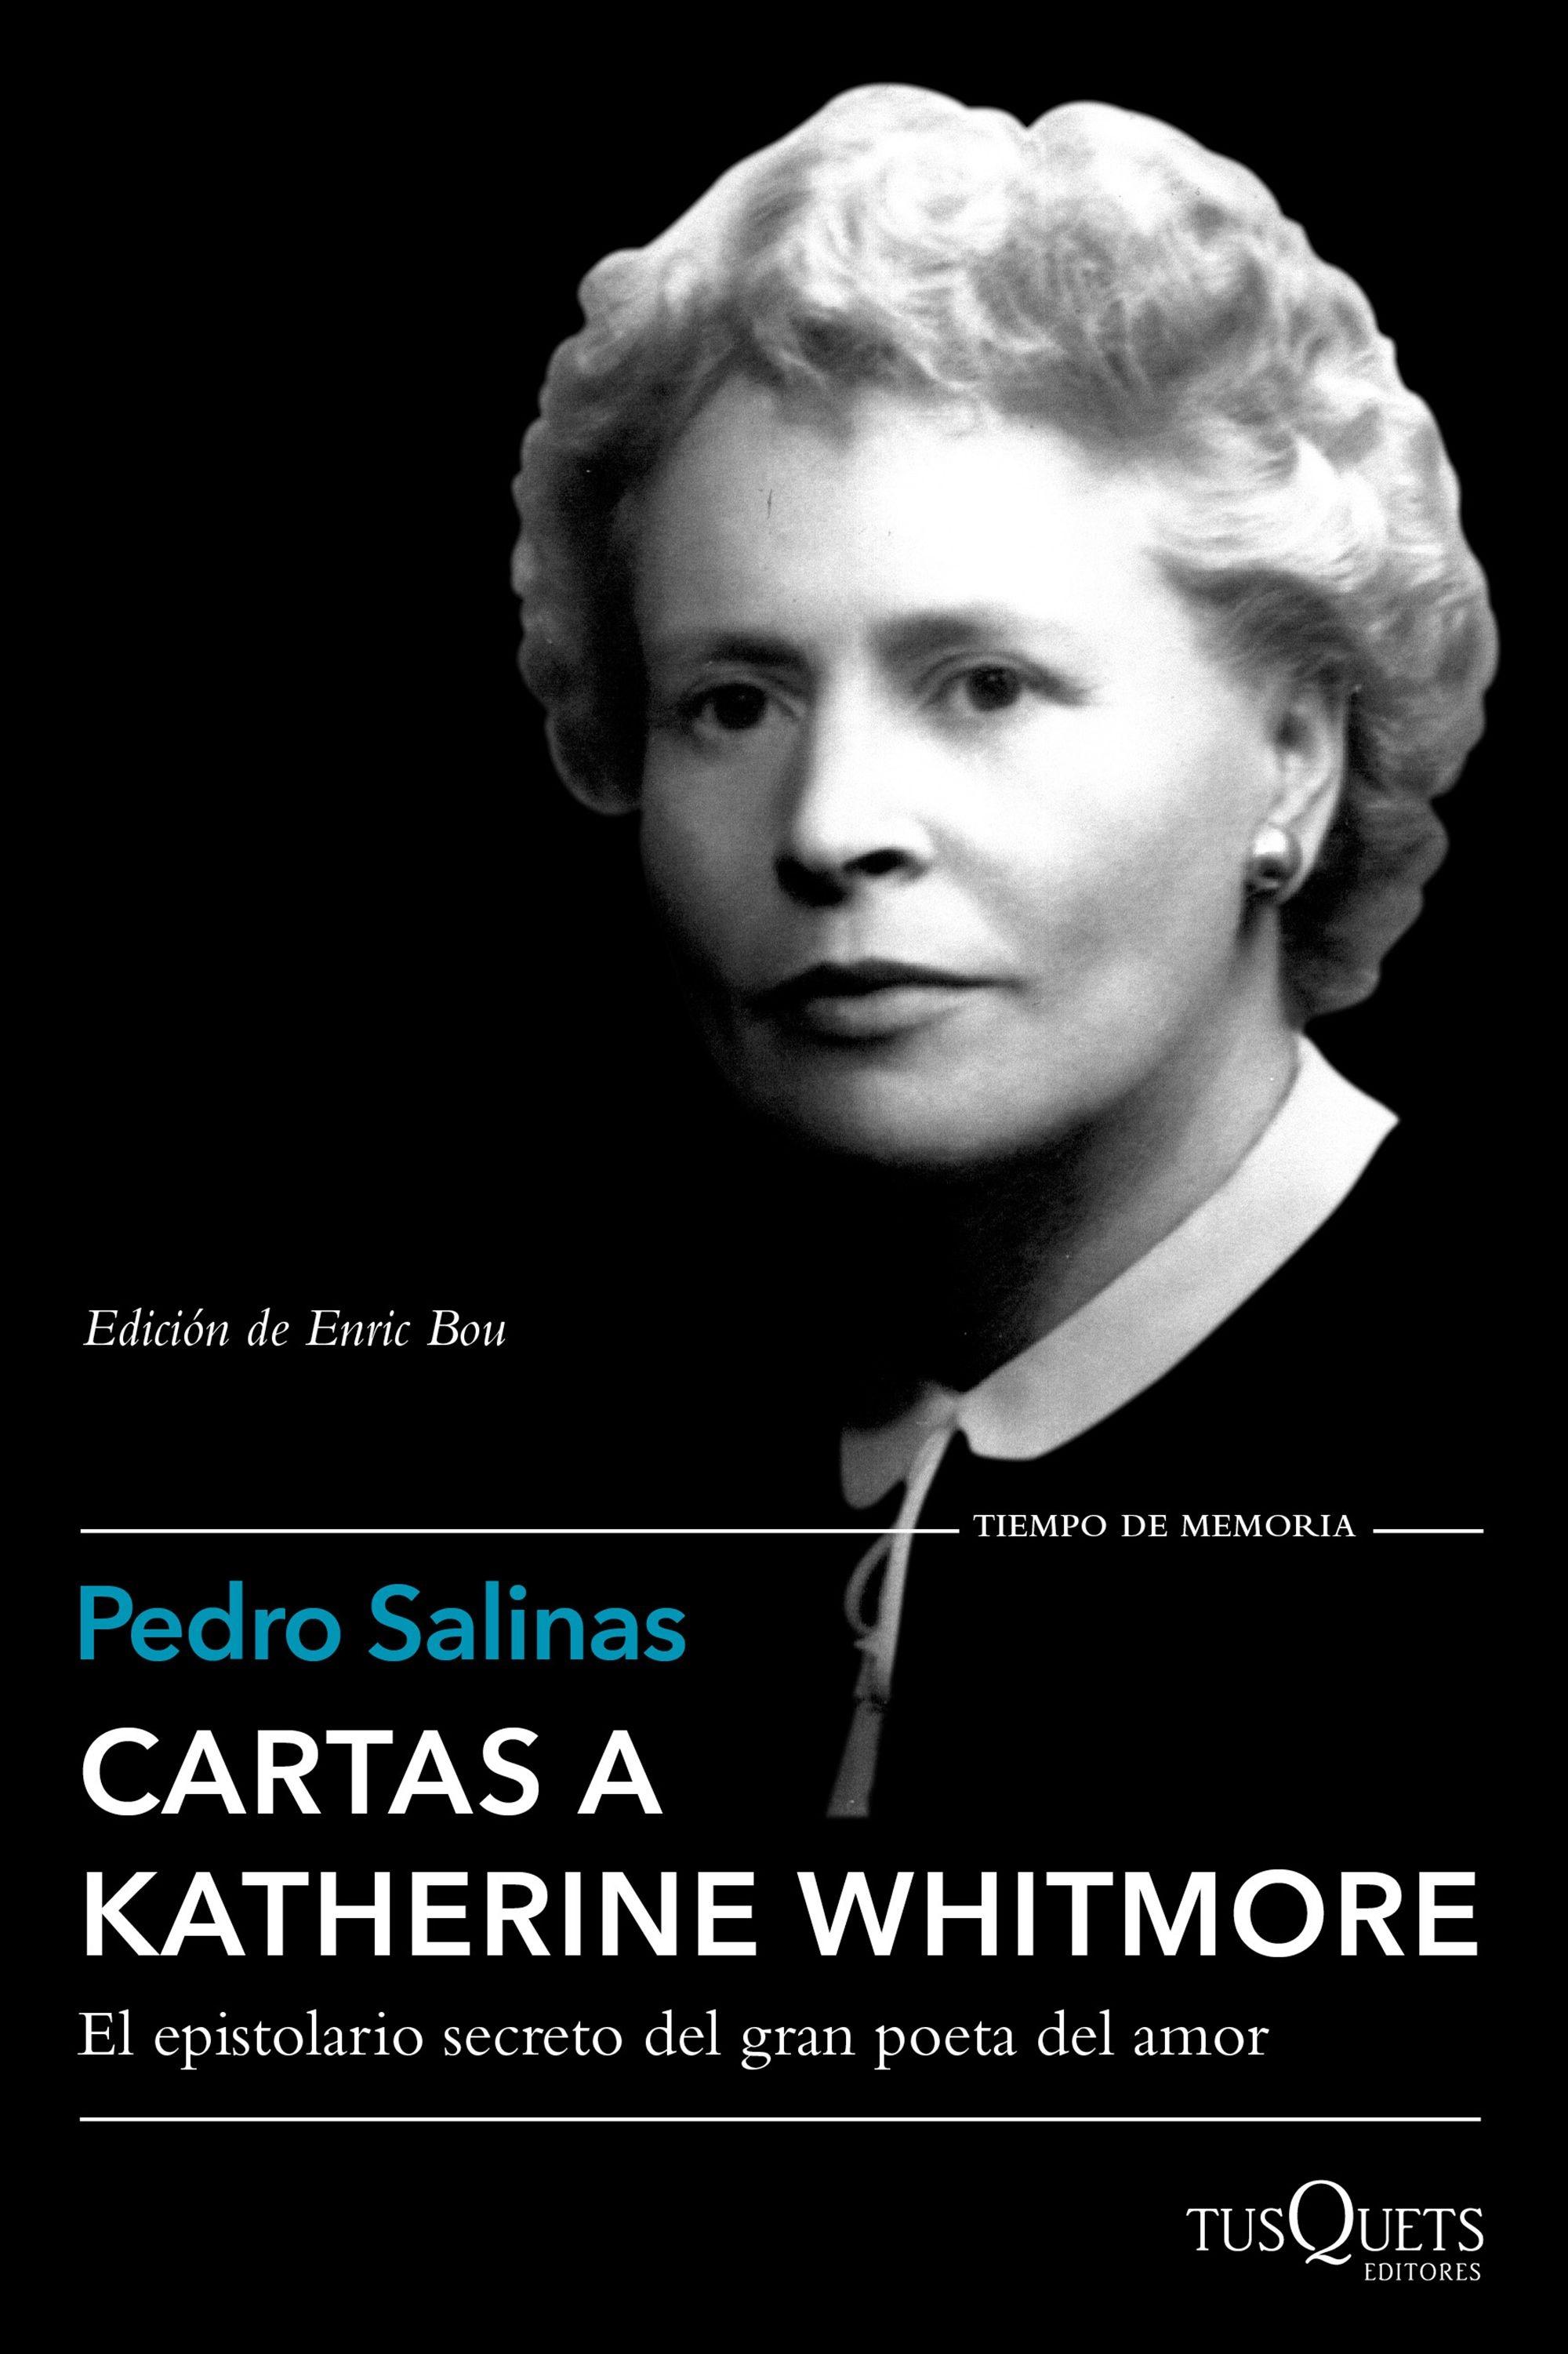 Cartas a Katherine Whitmore "Edición de Enric Bou"